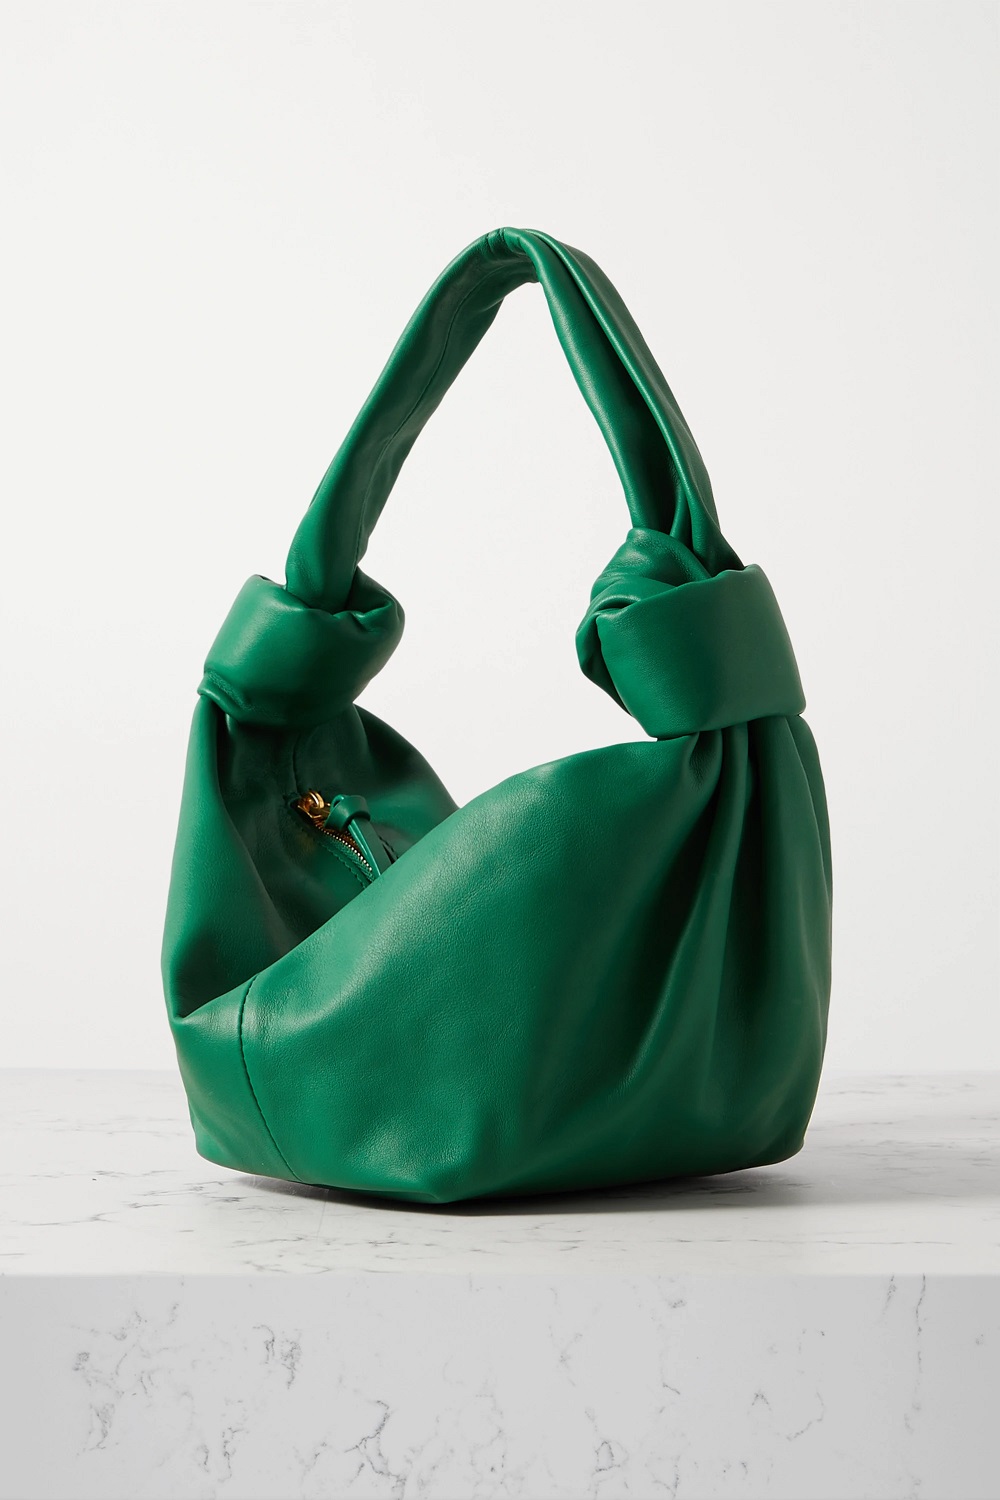 Bottega Veneta torbe u boji proljeće ljeto 2021.  